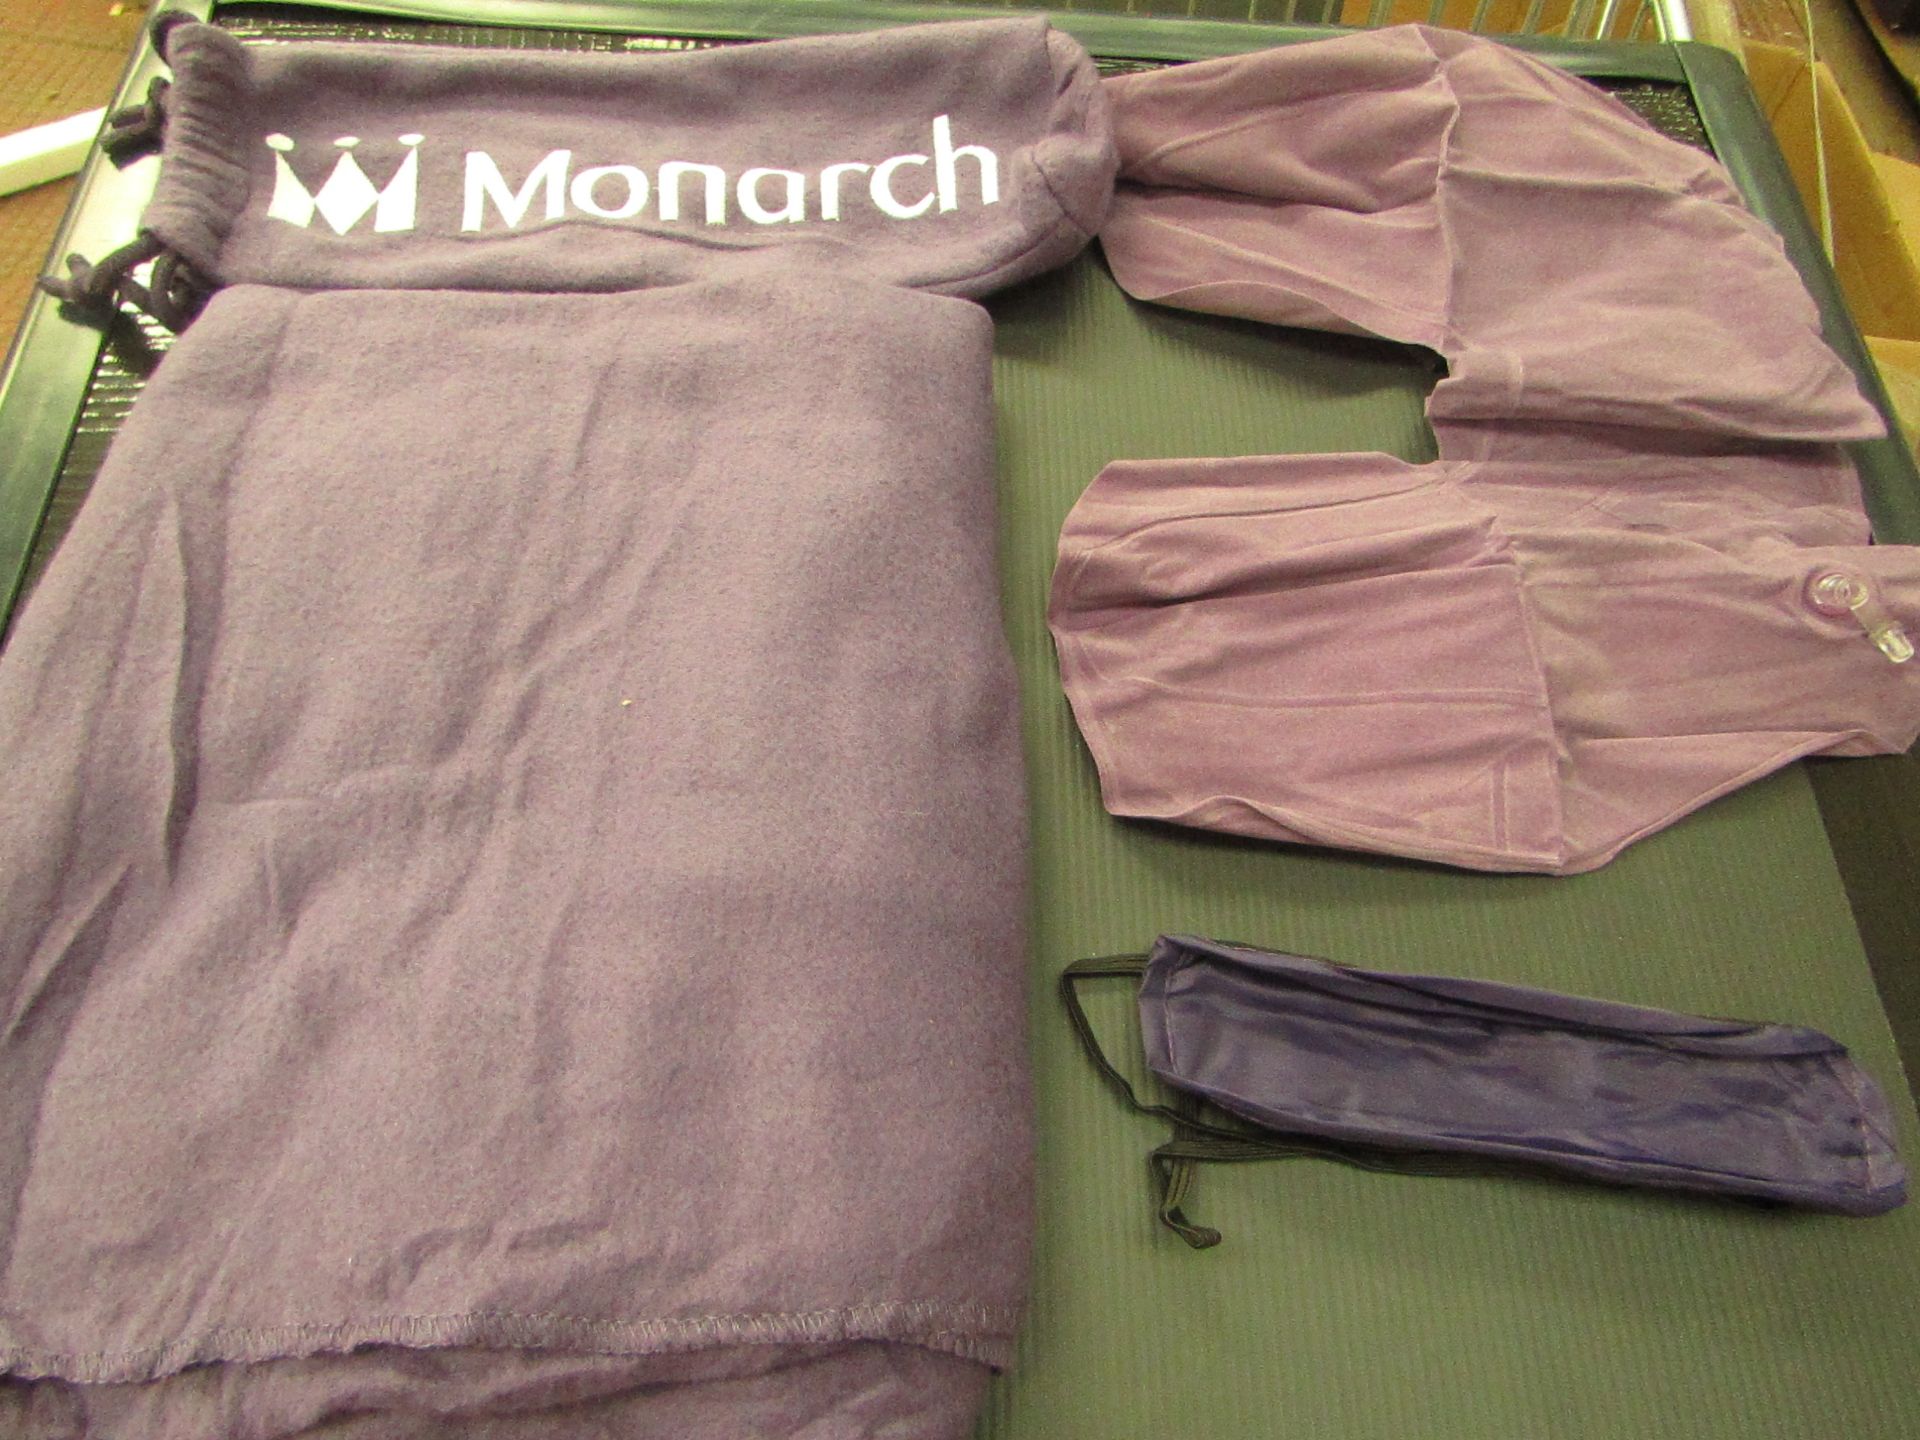 10 X Monarch Airlines - Amenity Kit - Includes : Fleece Blanket / Eye Sleeping Mask / Inflatable